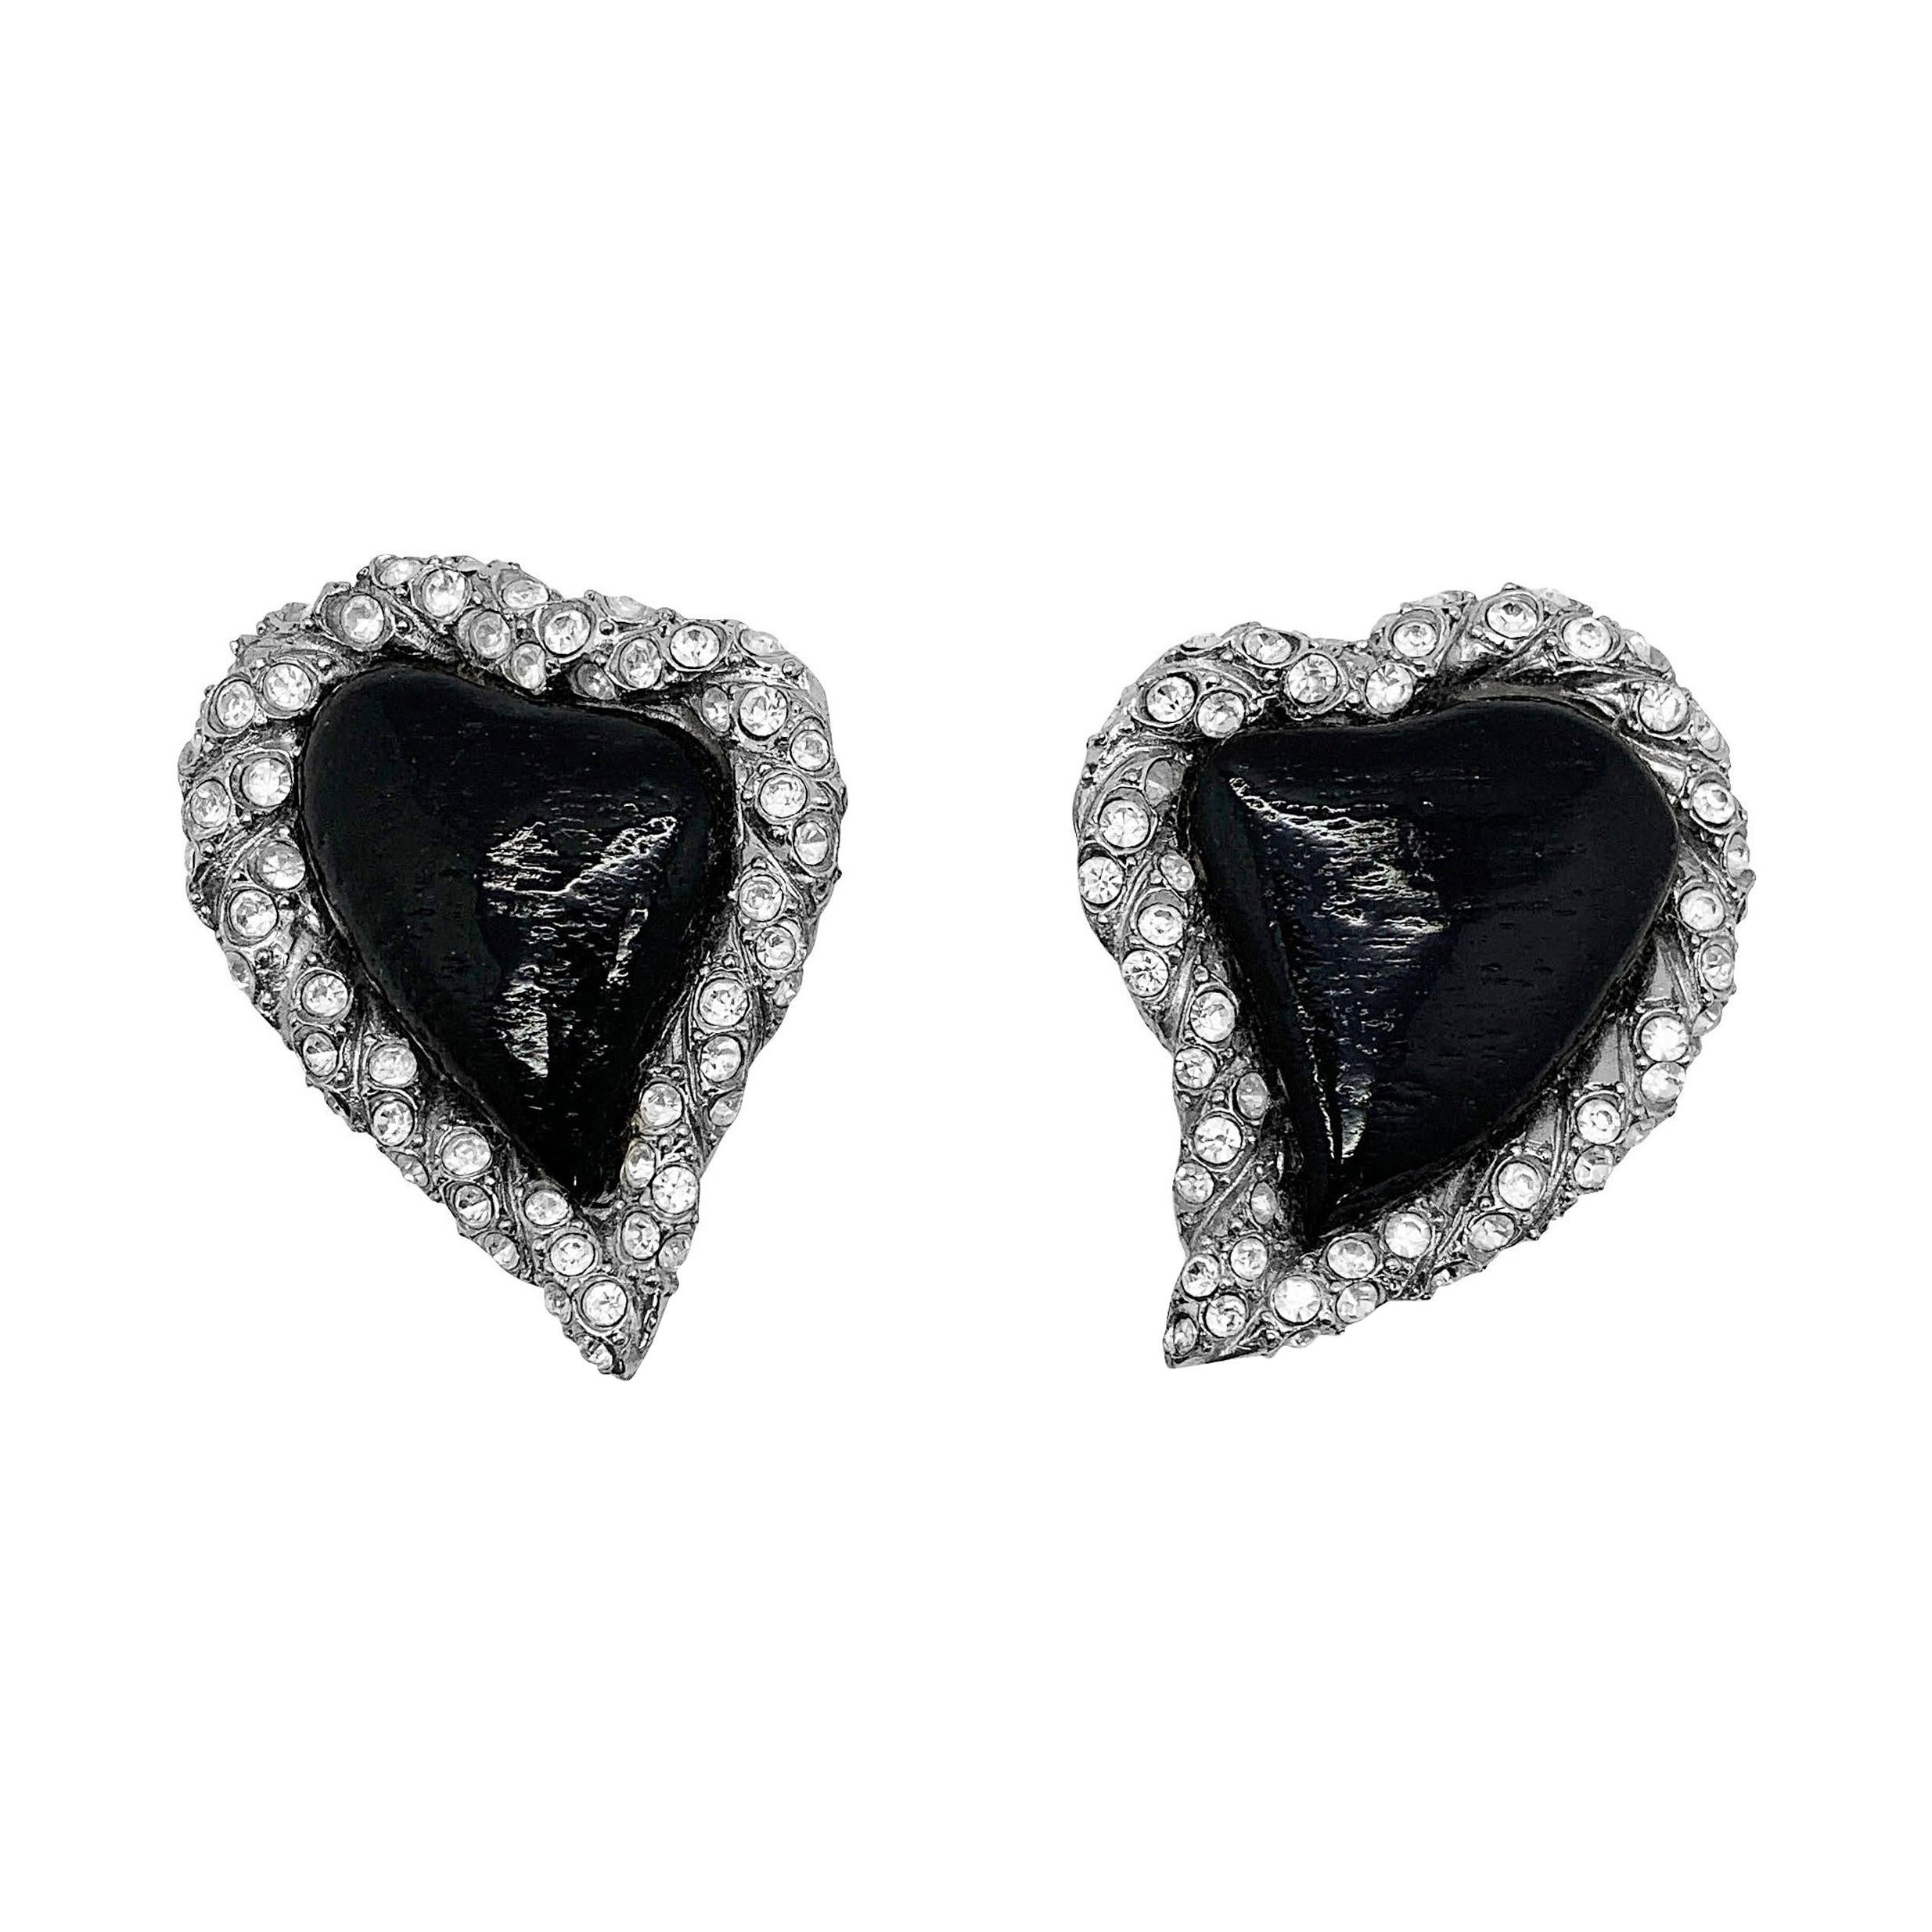 Yves Saint Laurent Rive Gauche Boucles d'oreilles vintage en forme de cœur noir, années 1980